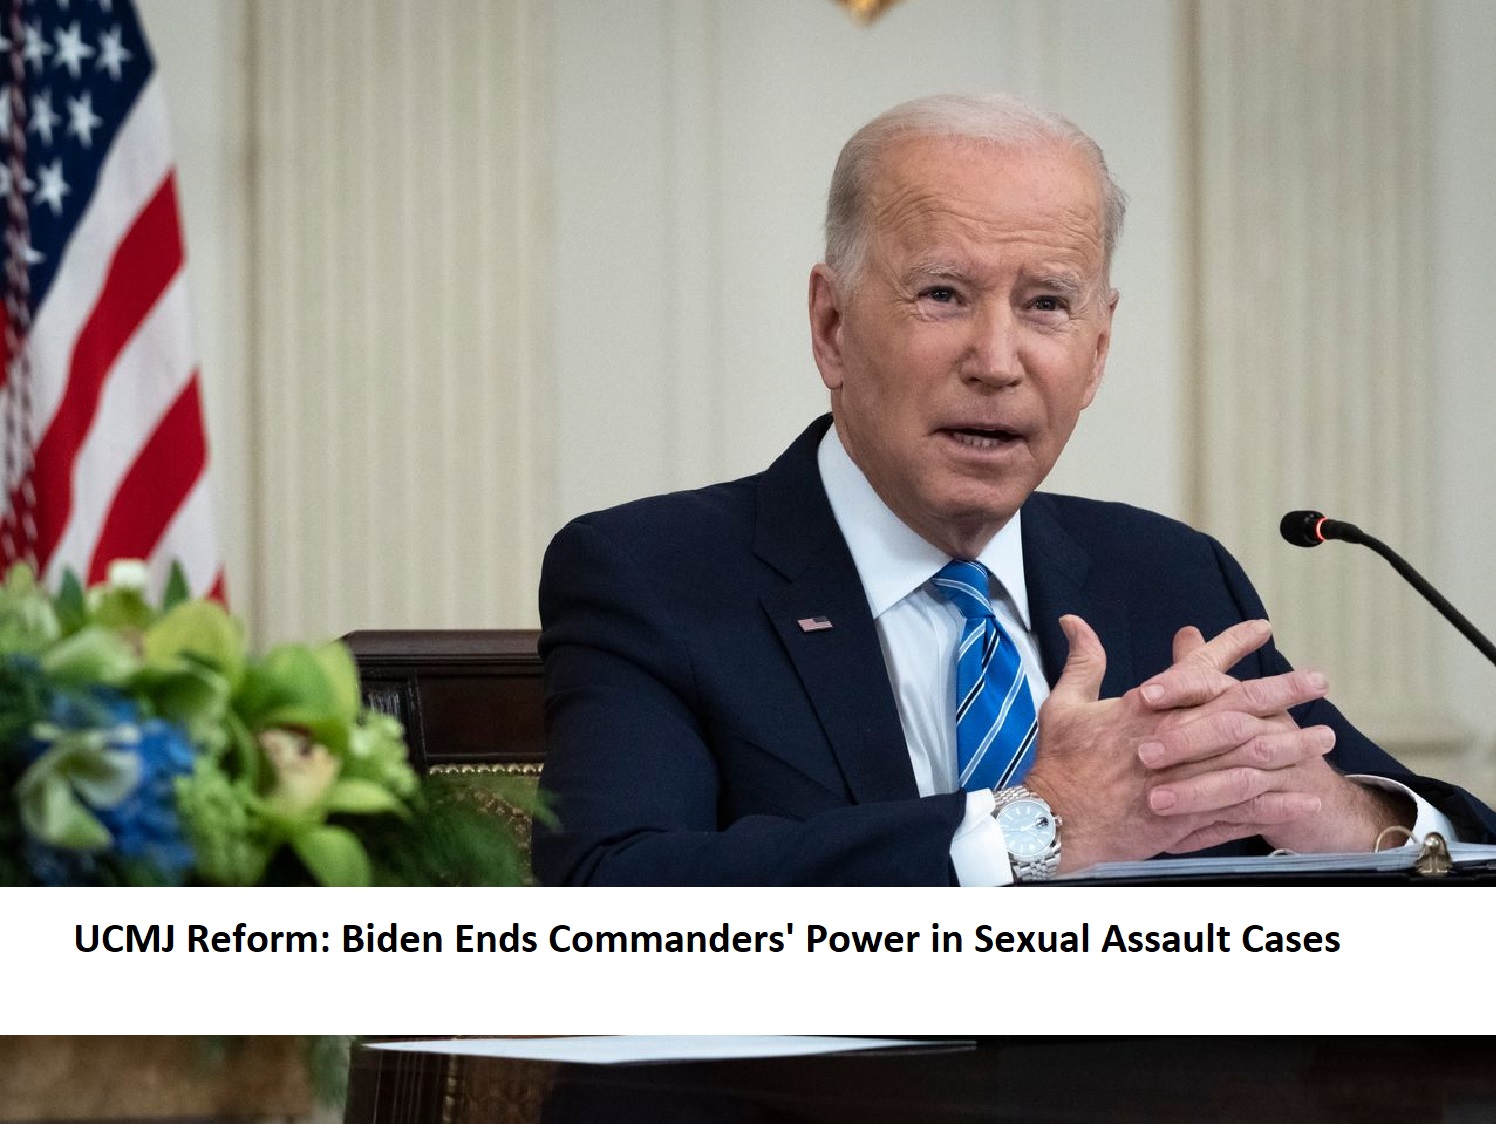 UCMJ Reform: Biden Ends Commanders' Power in Sexual Assault Cases